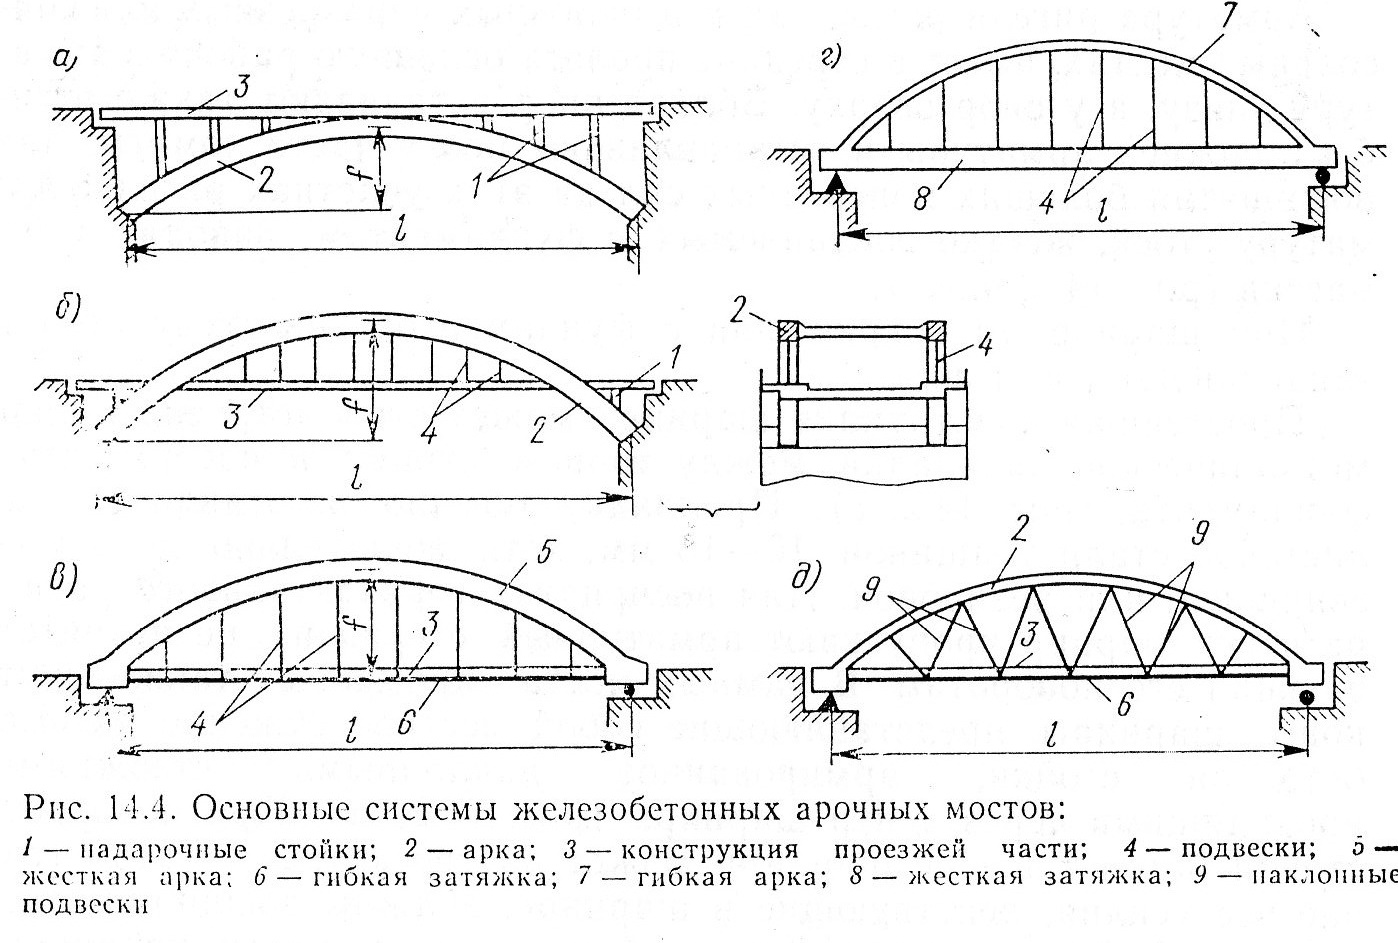 Статическая схема рамного моста